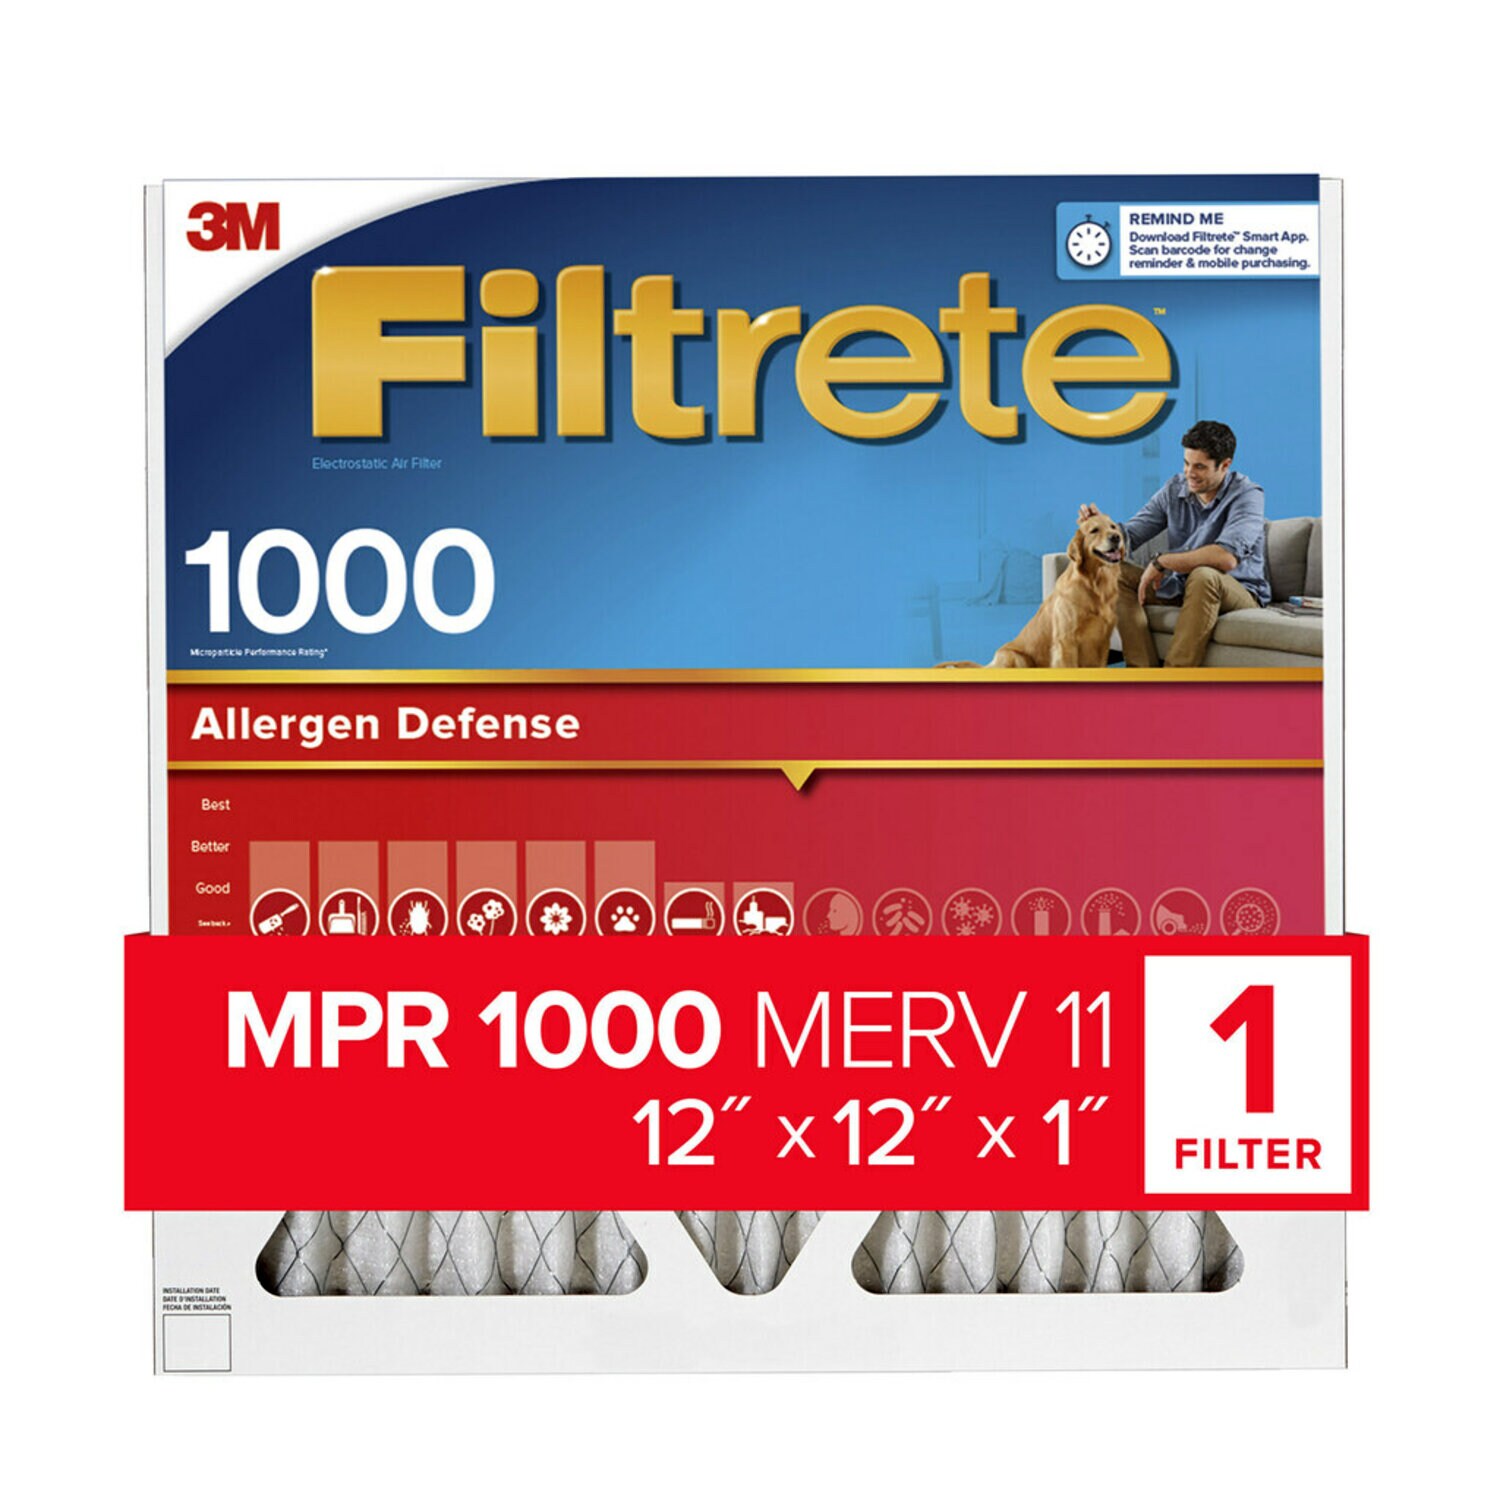 7100188256 - Filtrete Allergen Defense Air Filter, 1000 MPR, 9810-4, 12 in x 12 in x
1 in (30,4 cm x 30,4 cm x 2,5 cm)